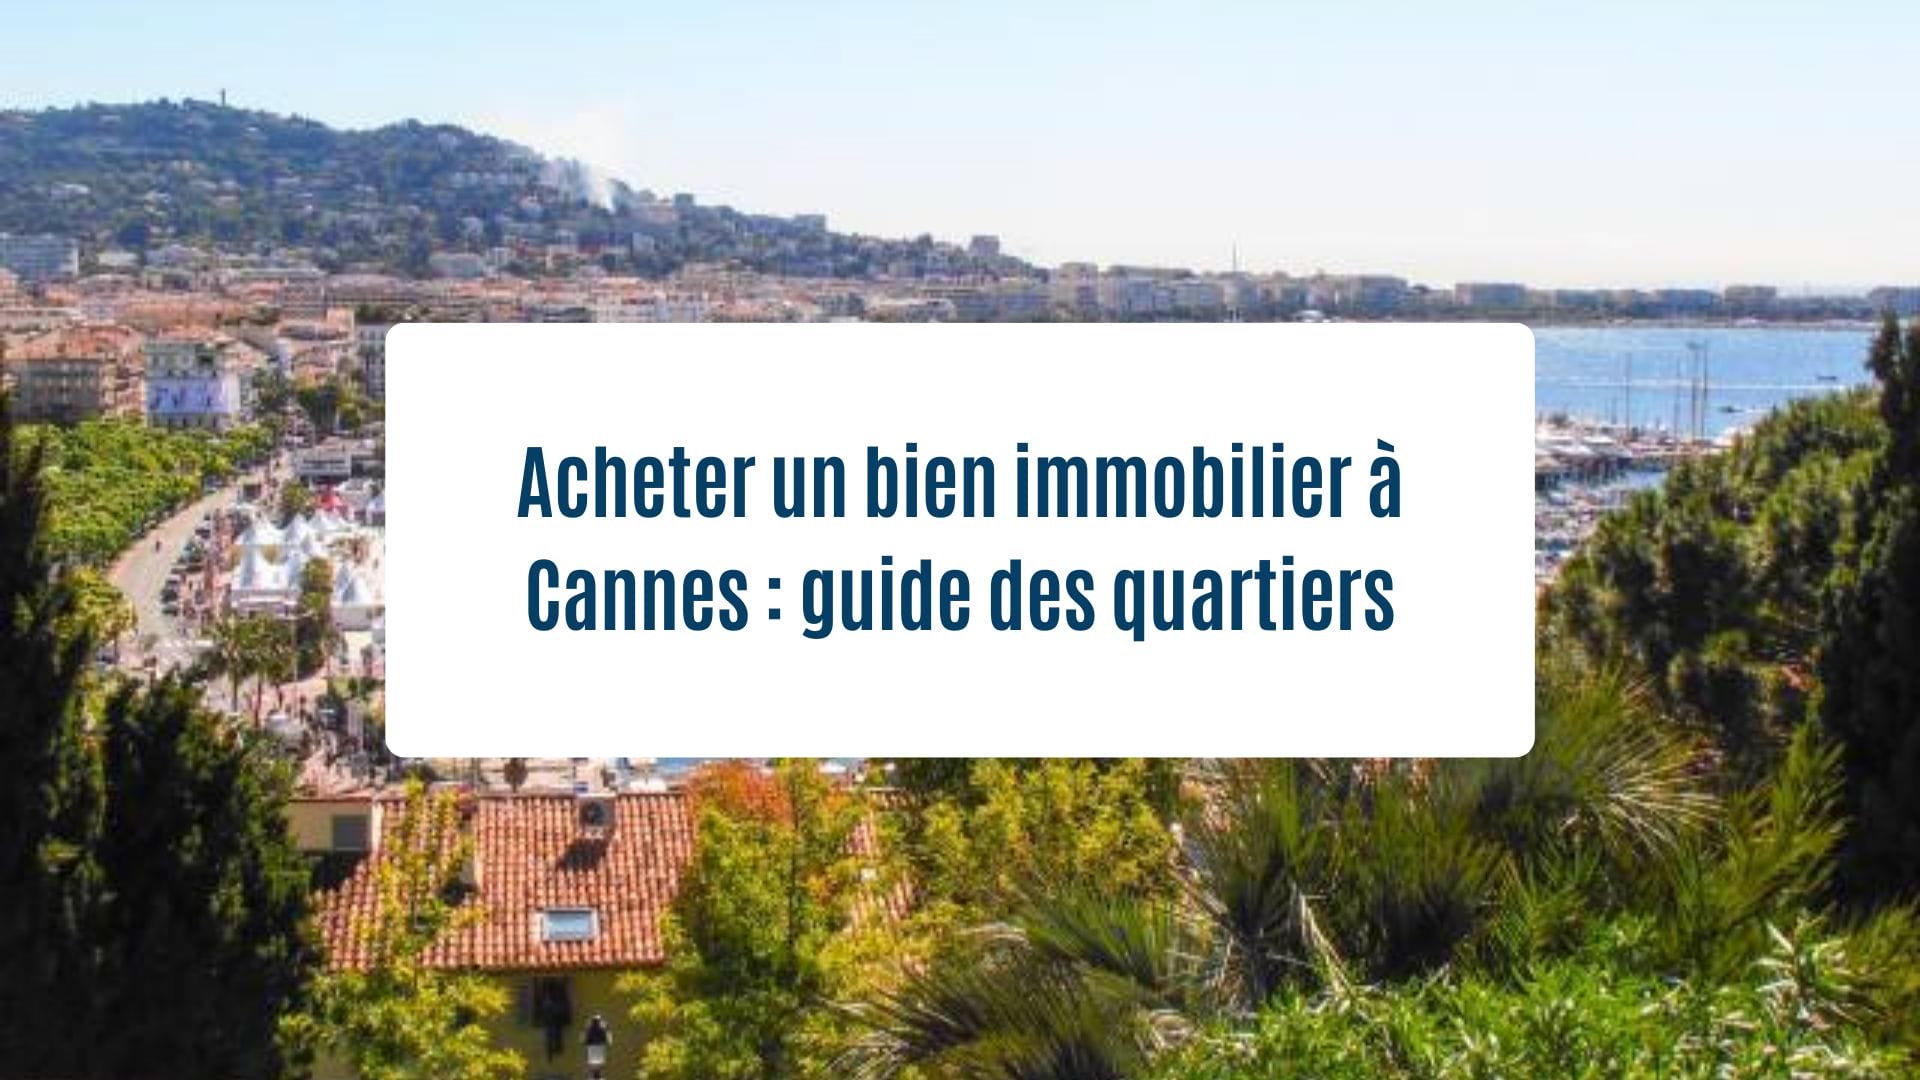 Actualités Olam Properties : Acheter un bien immobilier à Cannes guide des quartiers